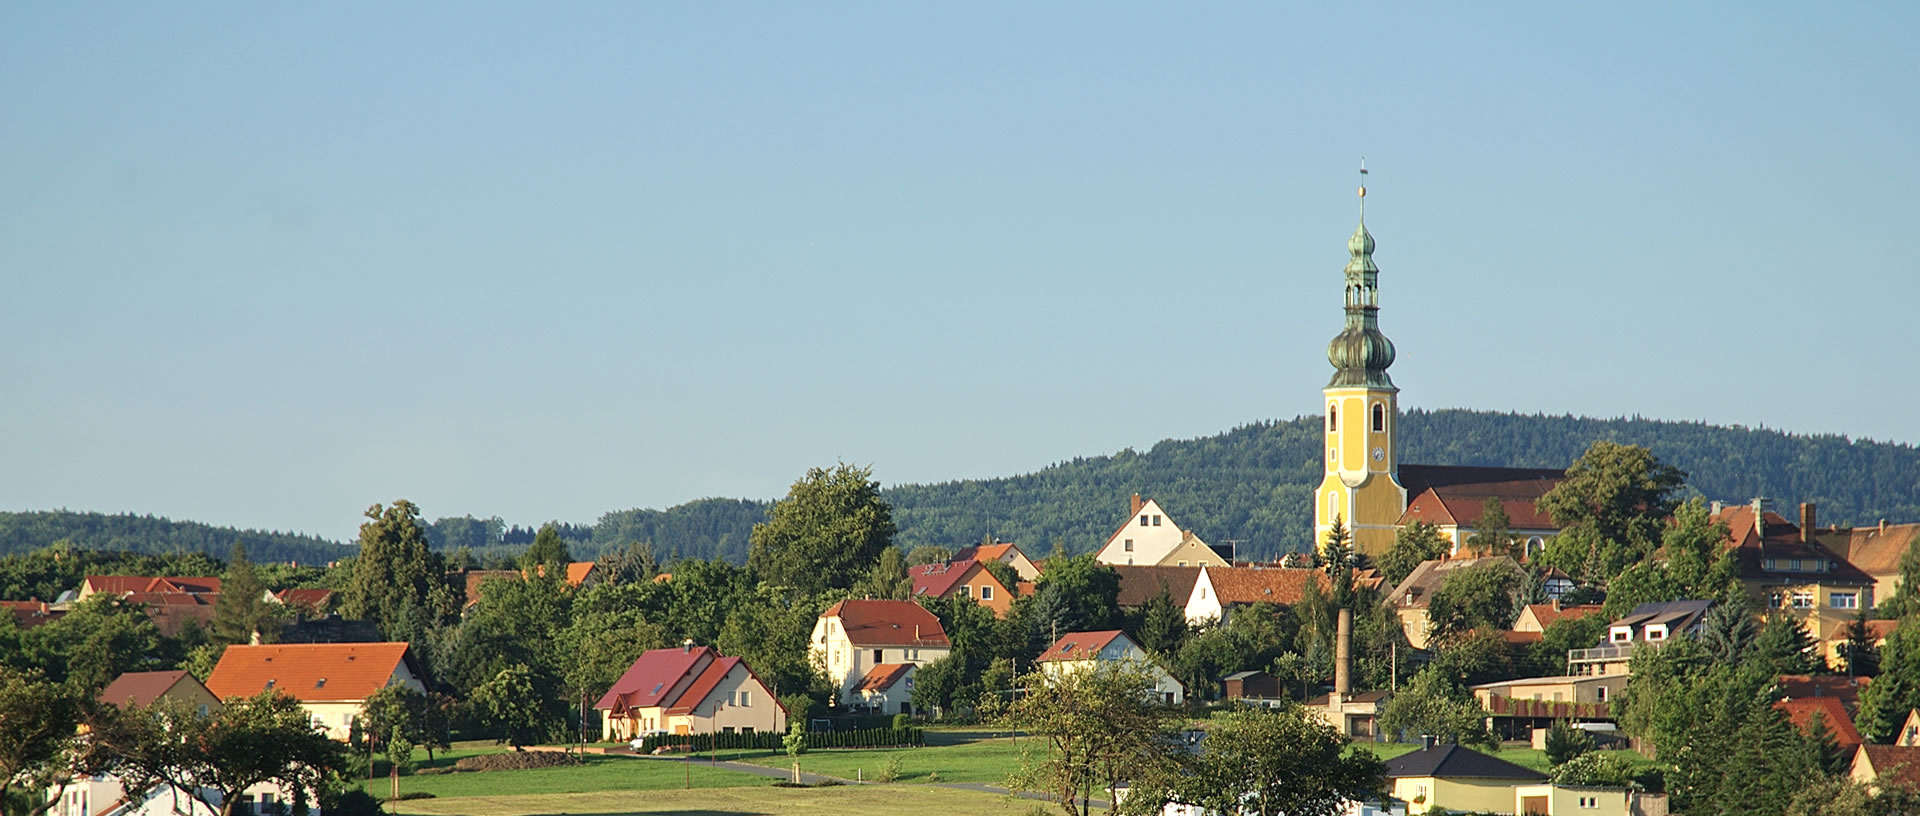 Gemeinde Hochkirch im Landkreis Bautzen in der Oberlausitz 